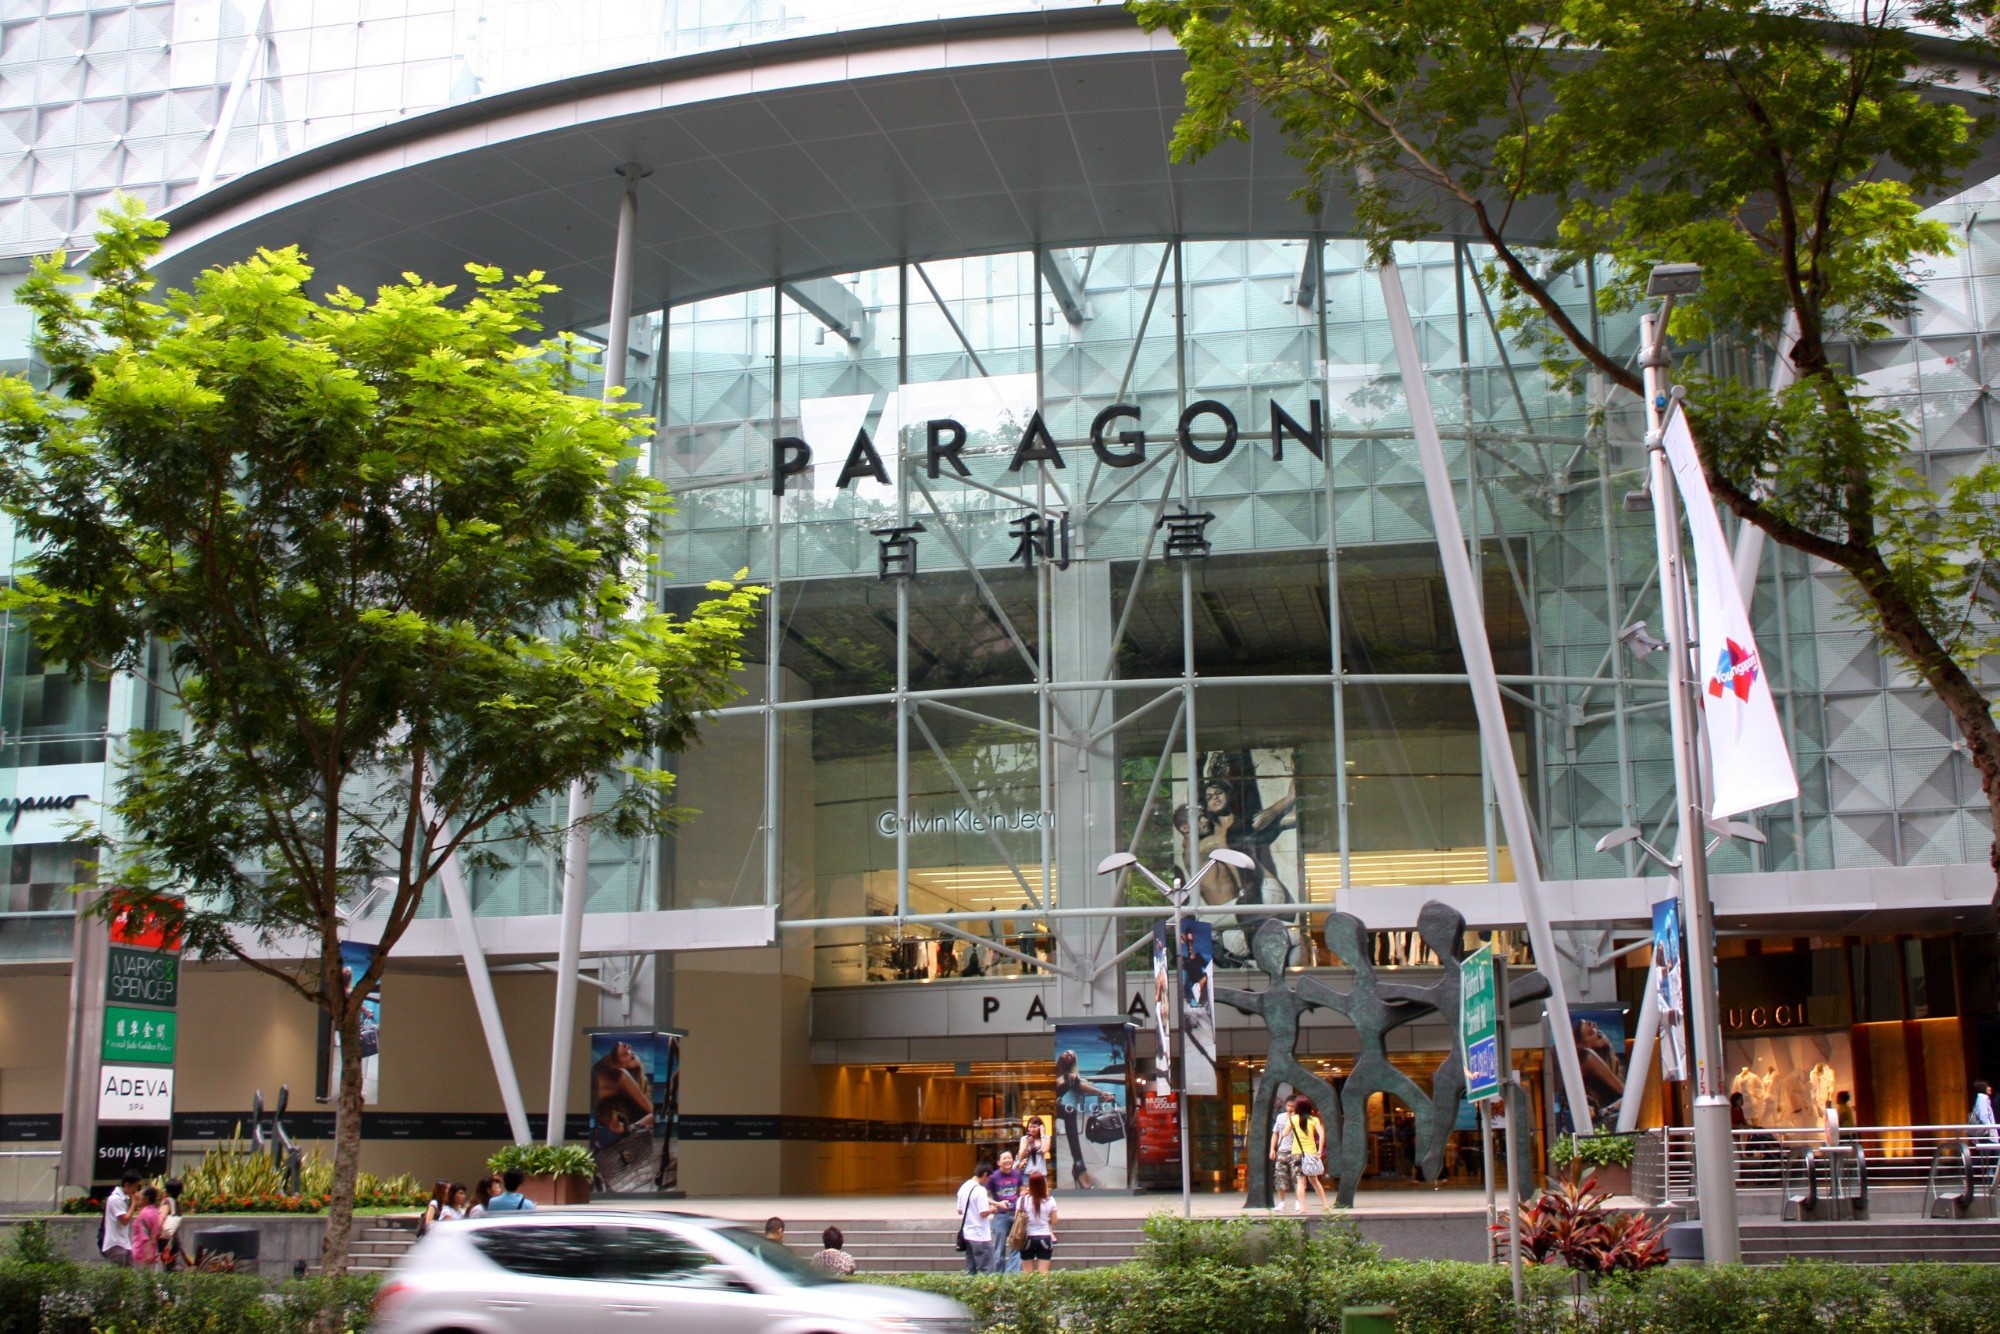 Paragon Centre nổi bật với các thương hiệu thời trang thể thao 